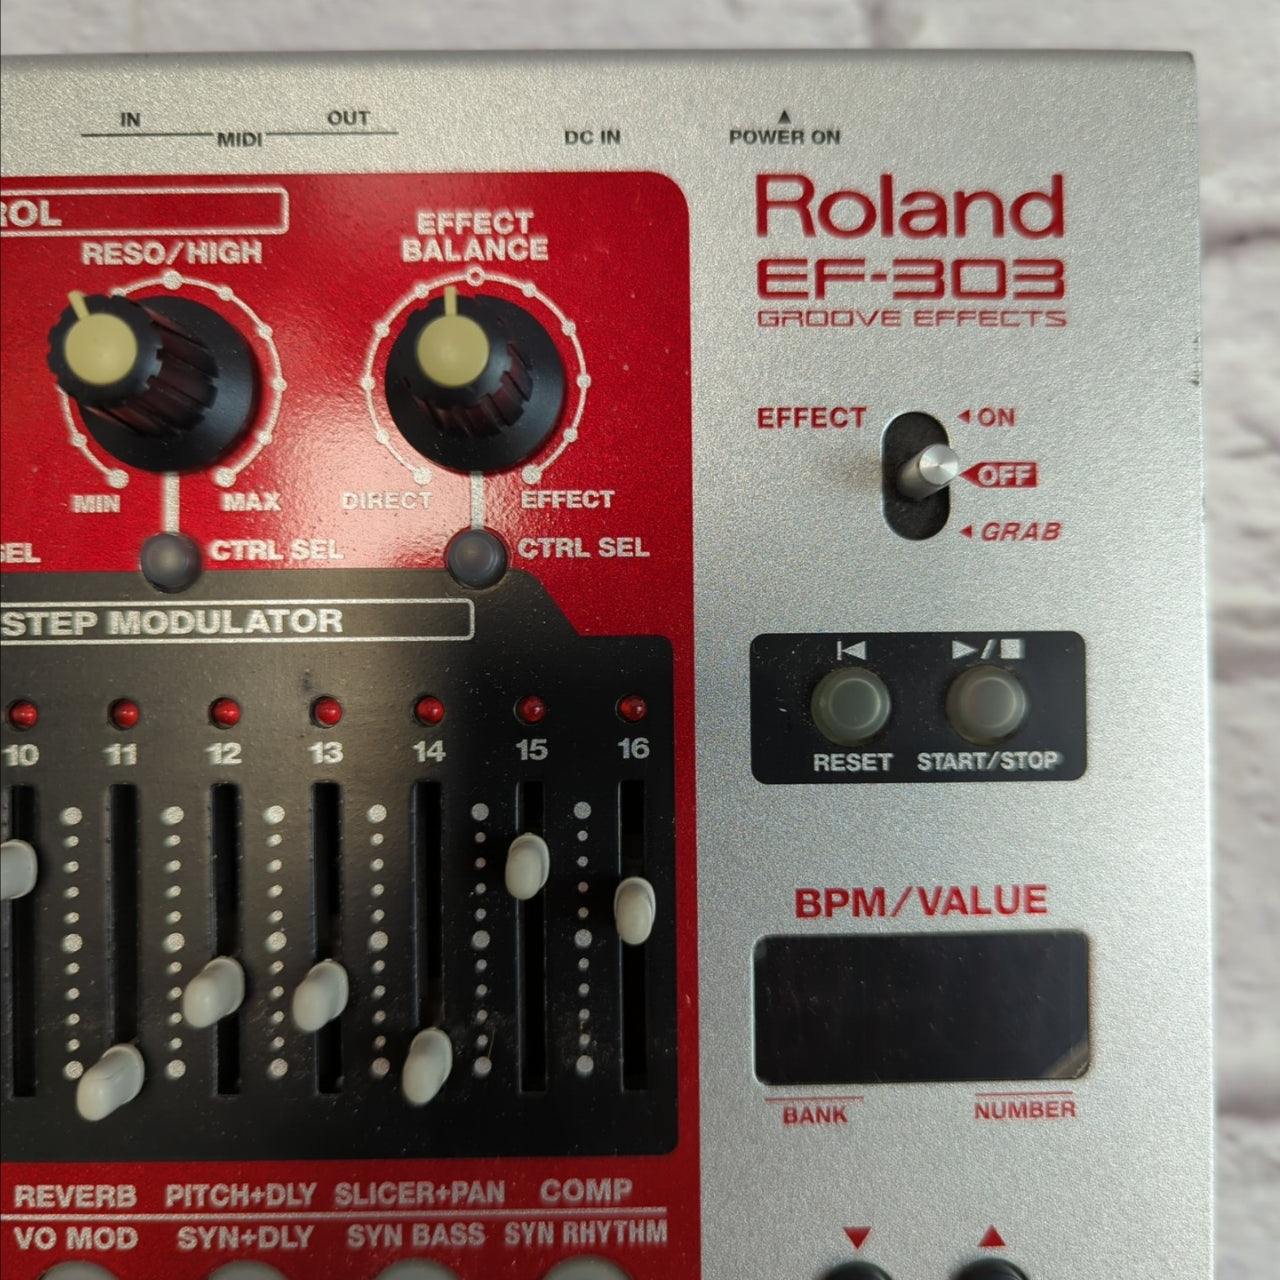 Roland EF-303 Groovebox Synthesizer Drum Machine